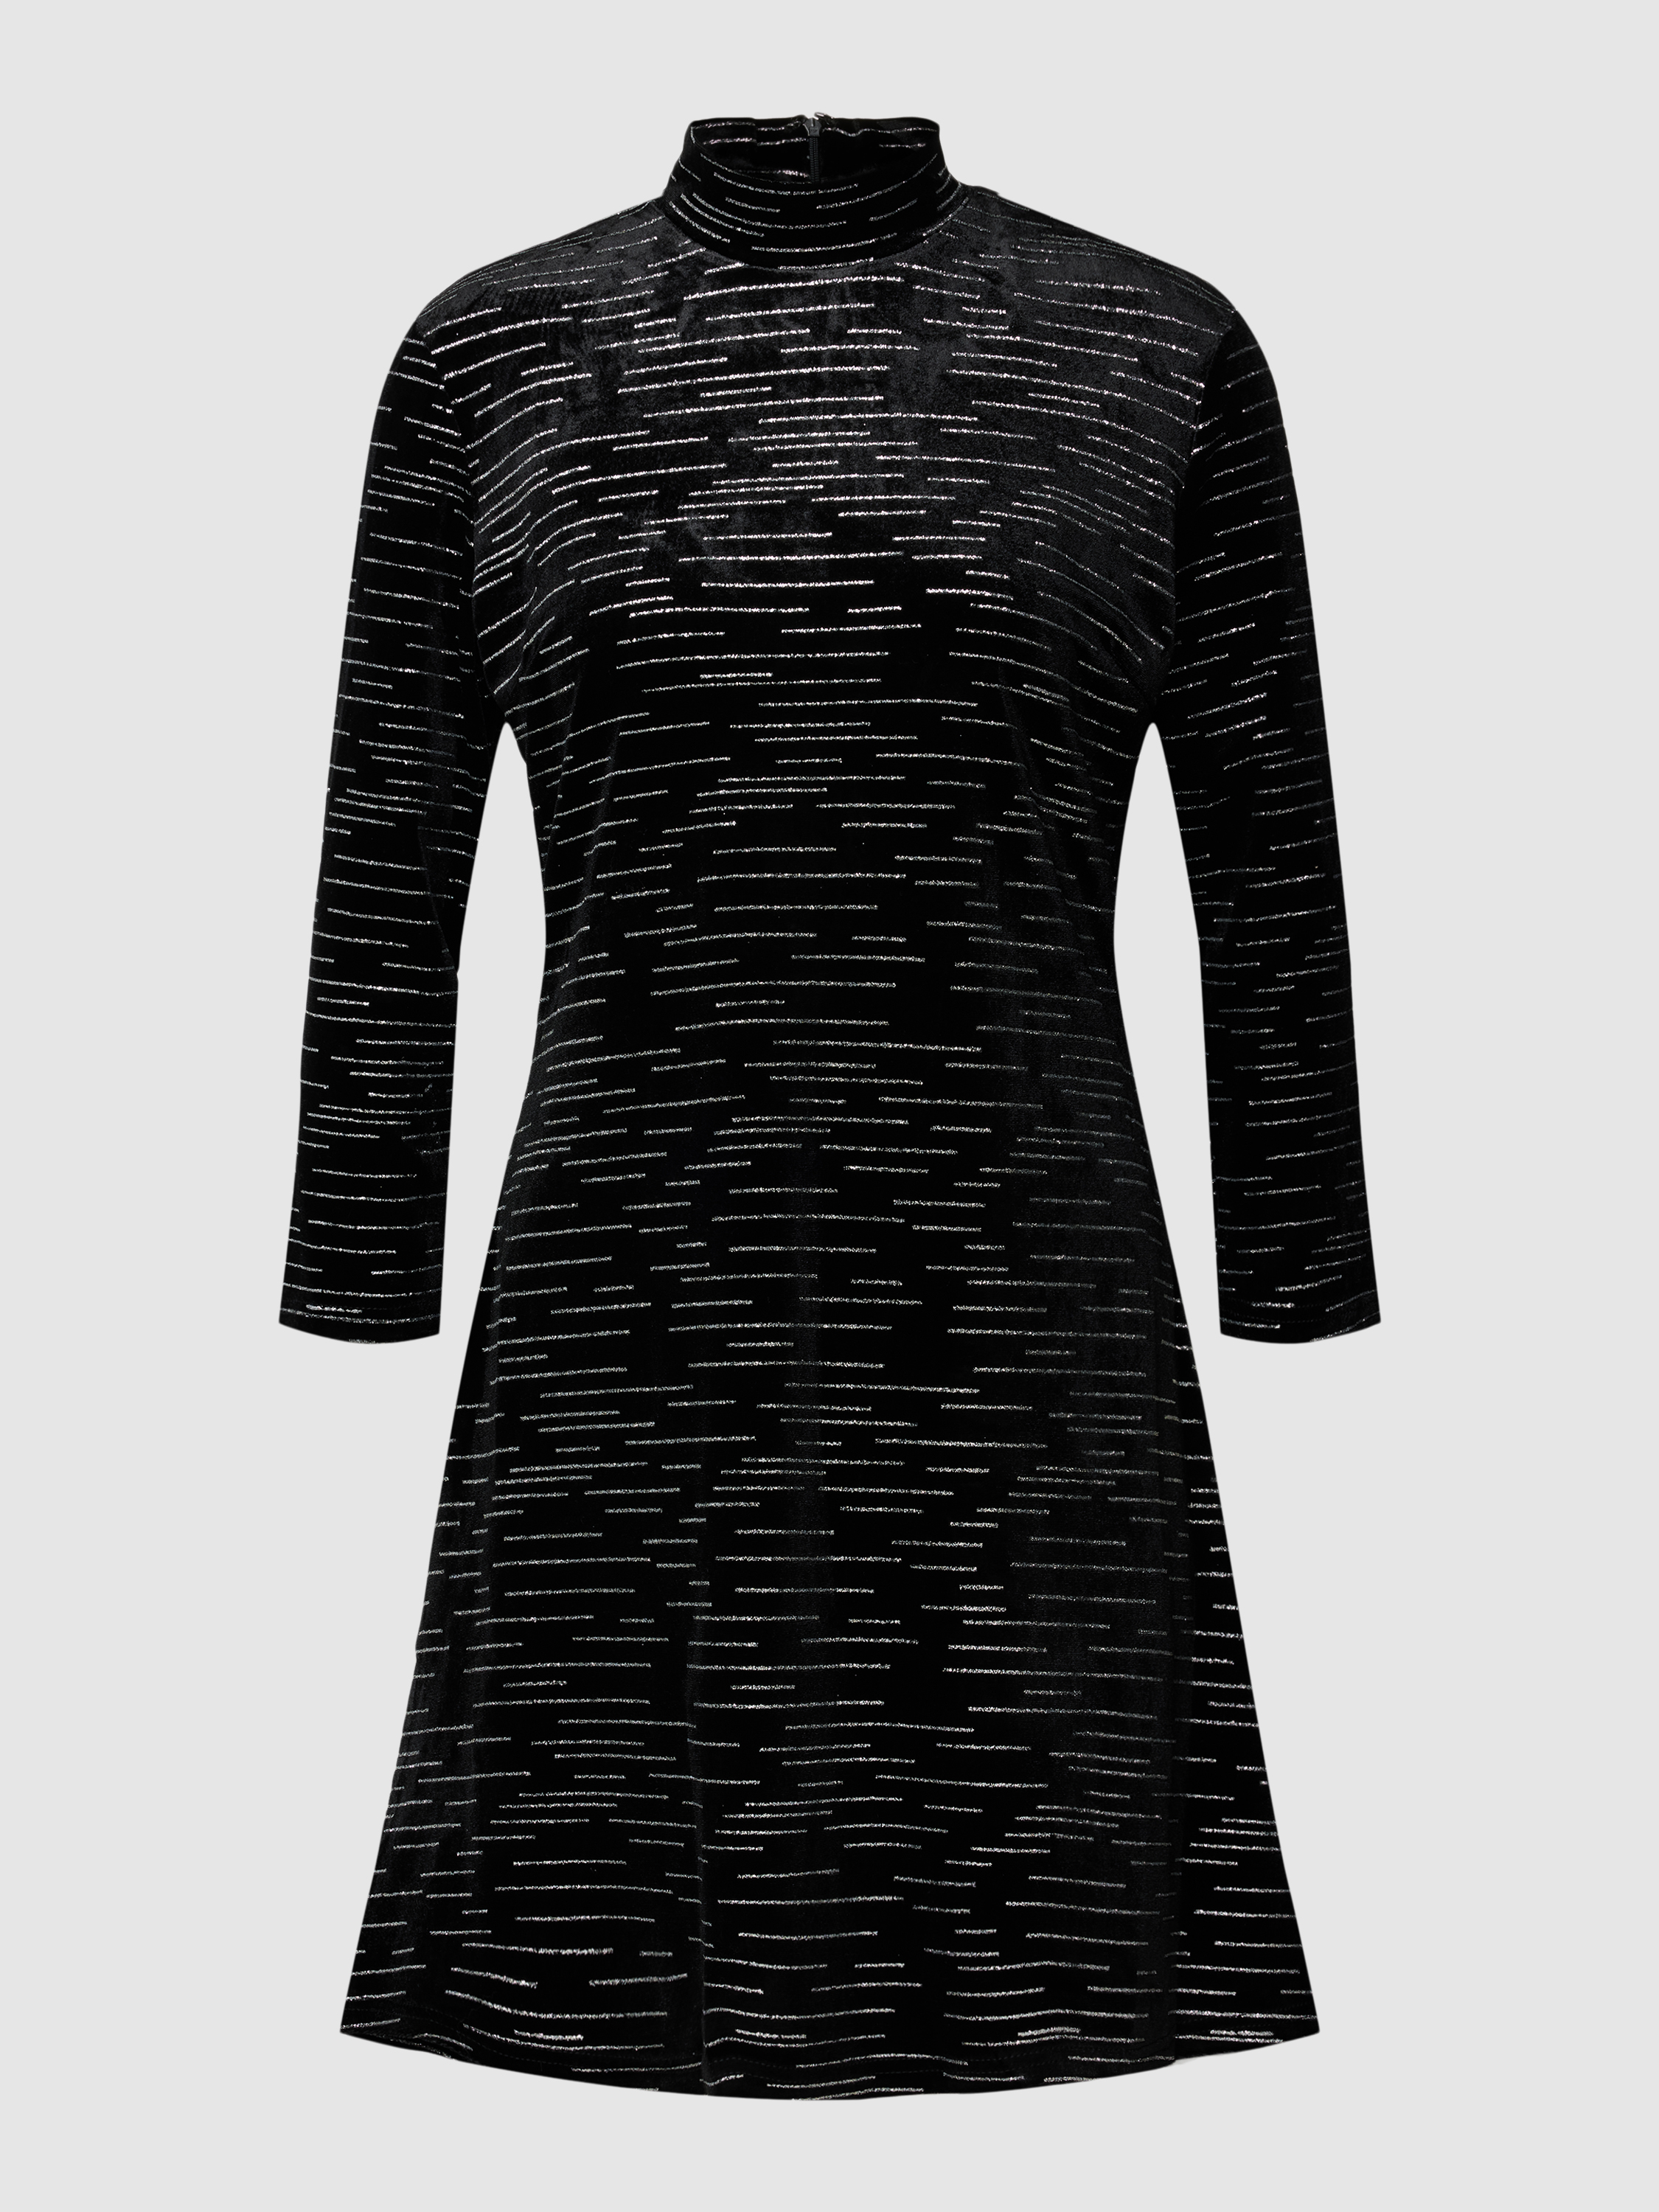 Платье женское Apricot 1778154 черное XL (доставка из-за рубежа)